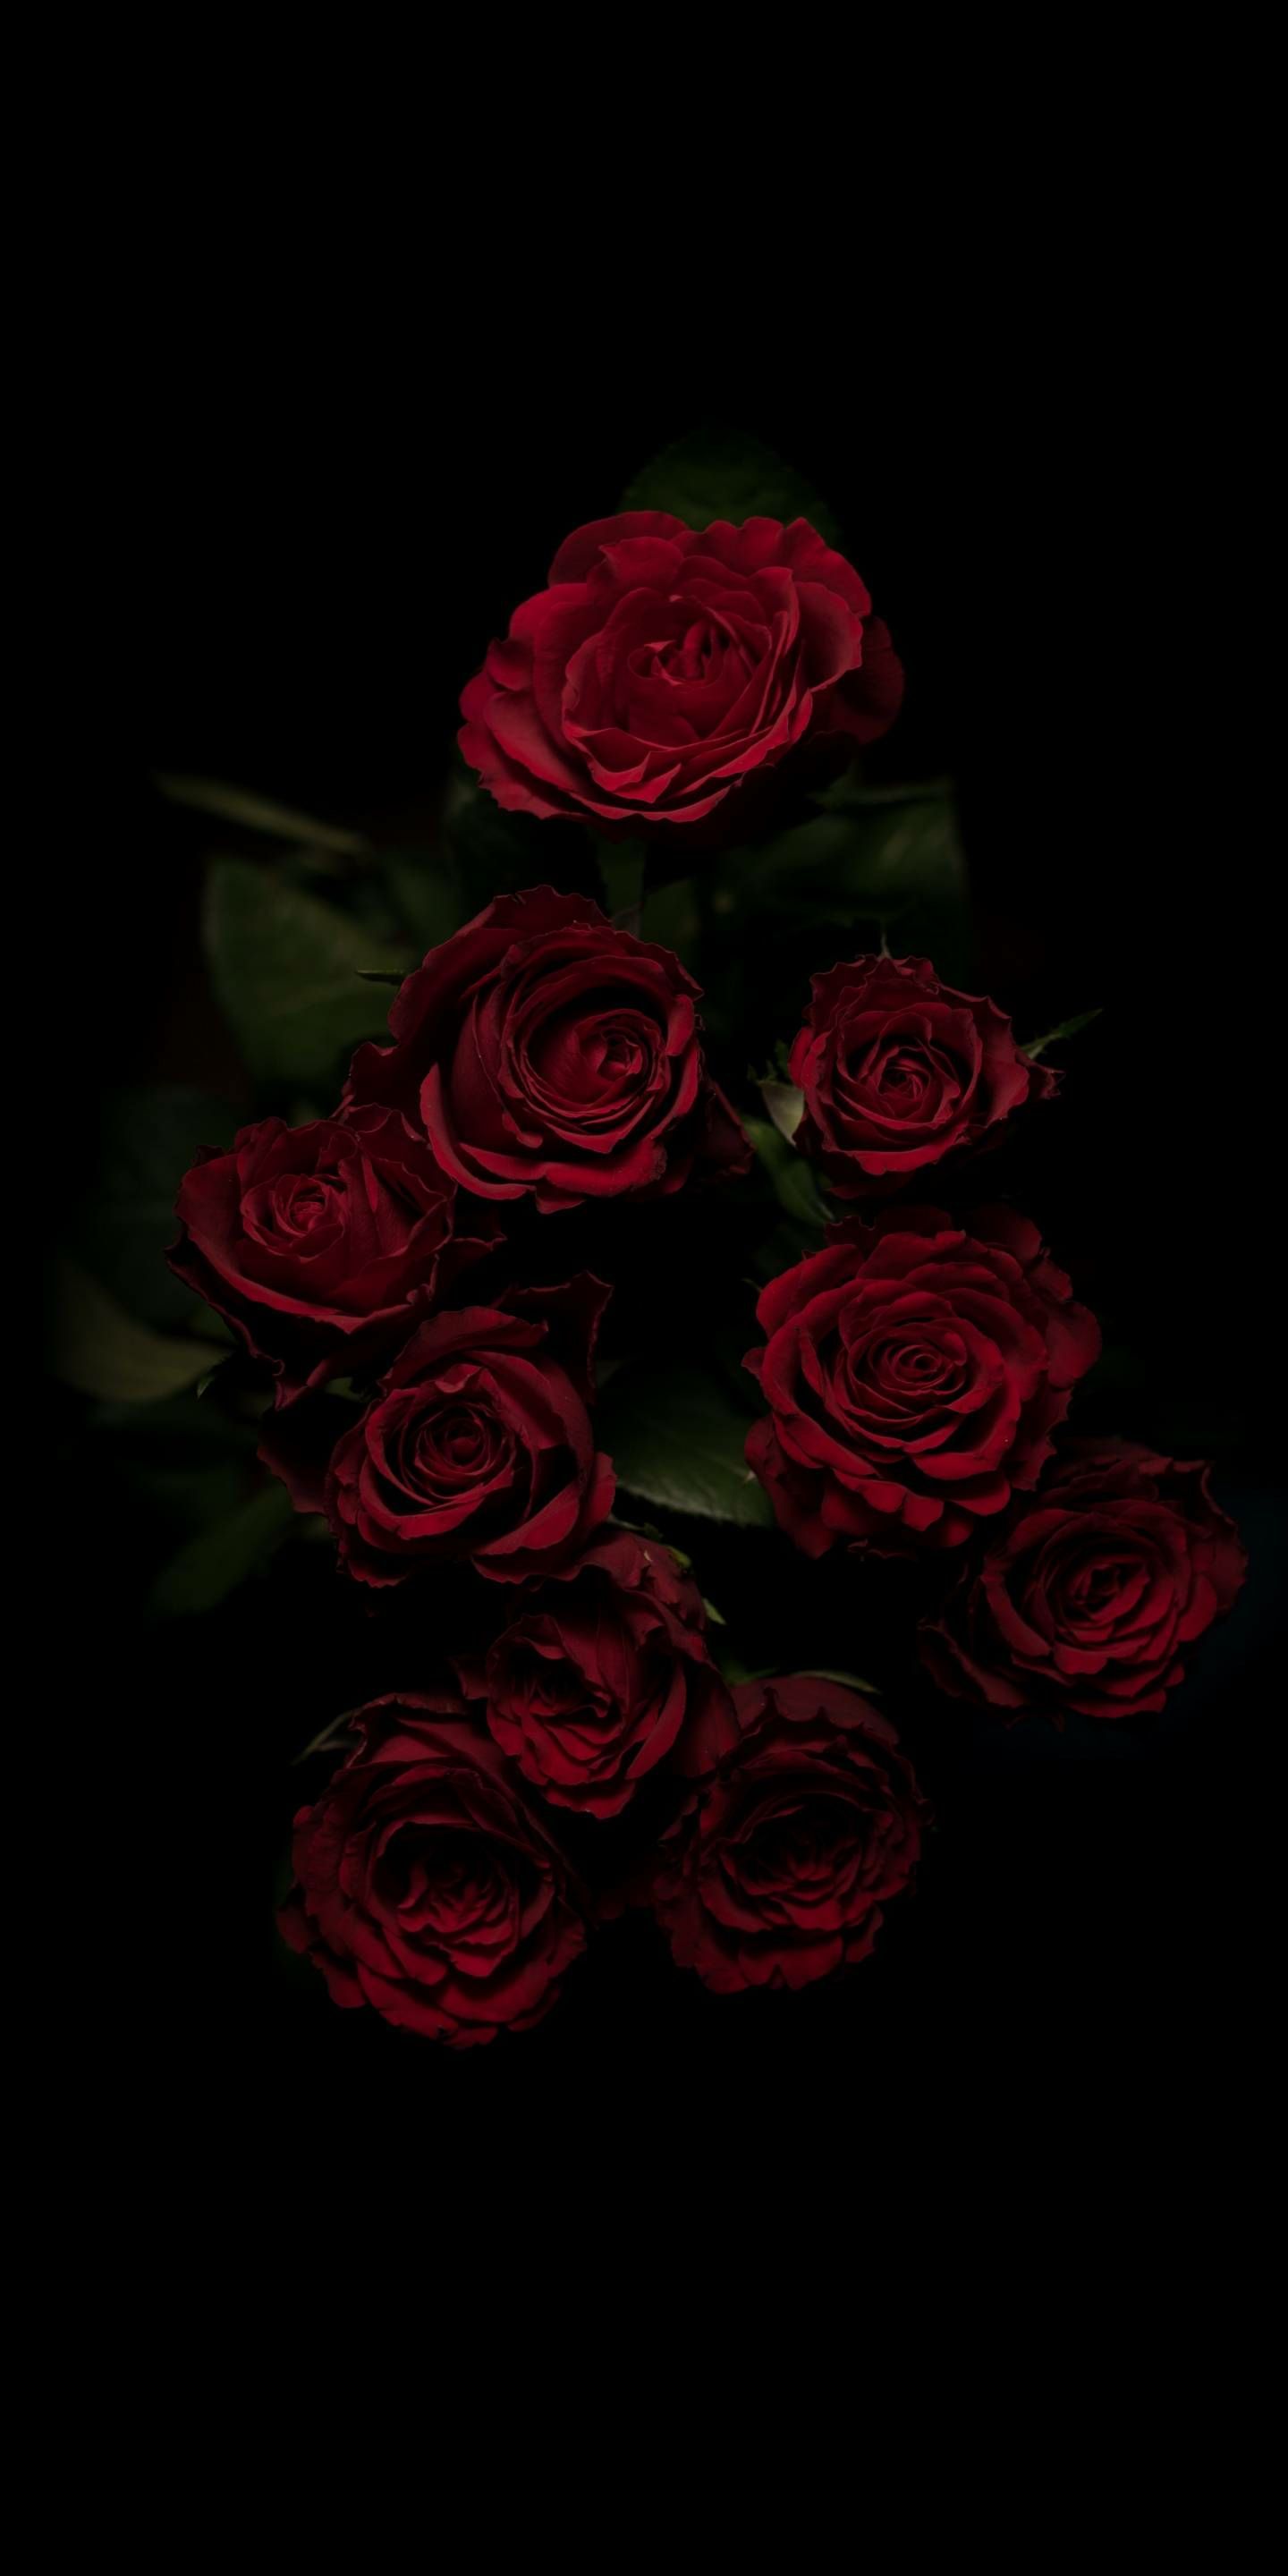 Dark Aesthetics. Rose wallpaper, Red roses wallpaper, Flowers black background